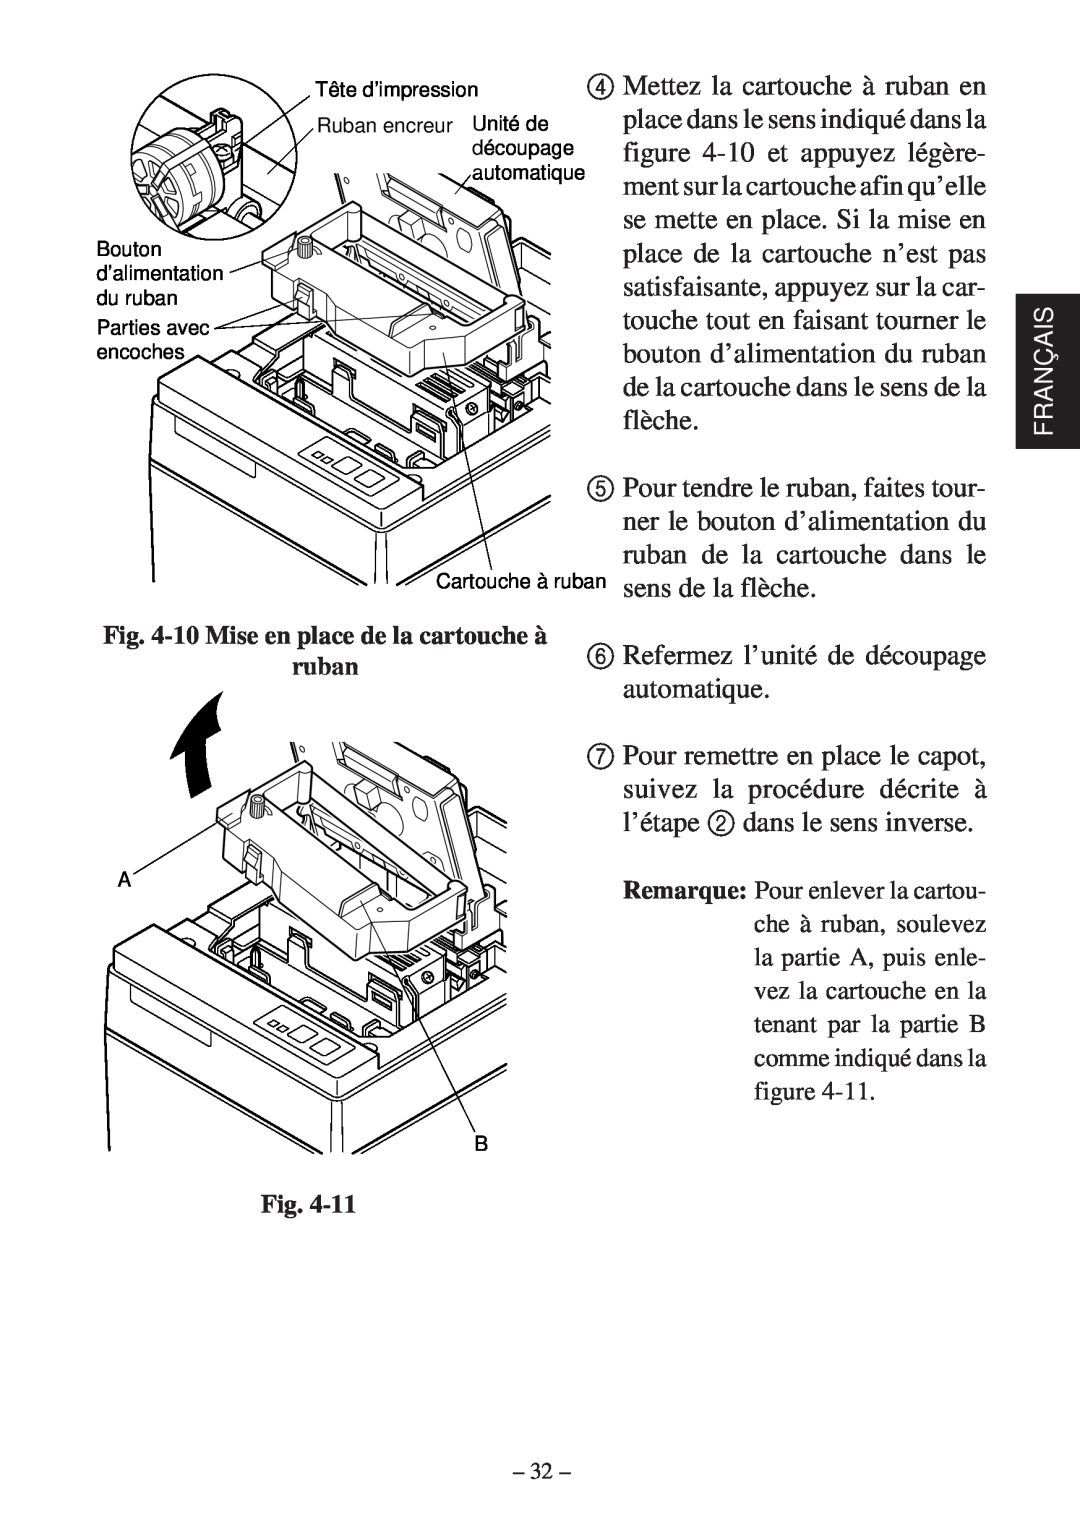 Star Micronics SP200F user manual Refermez l’unité de découpage automatique 